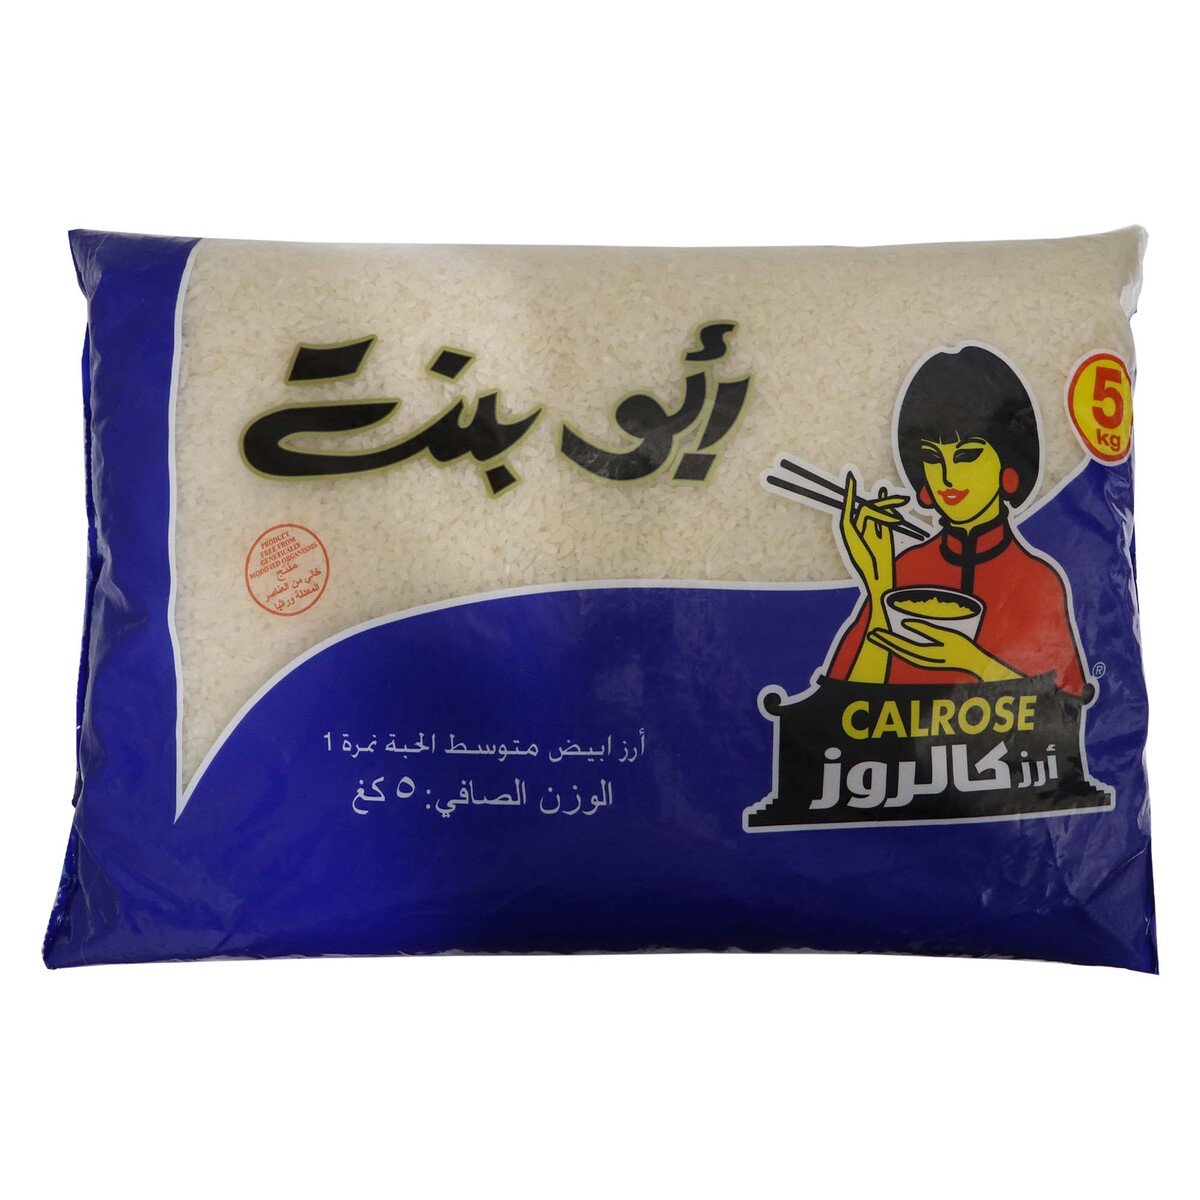 اشتري قم بشراء أبو بنت أرز كالروز 5 كجم Online at Best Price من الموقع - من لولو هايبر ماركت Egyptian Rice في الكويت